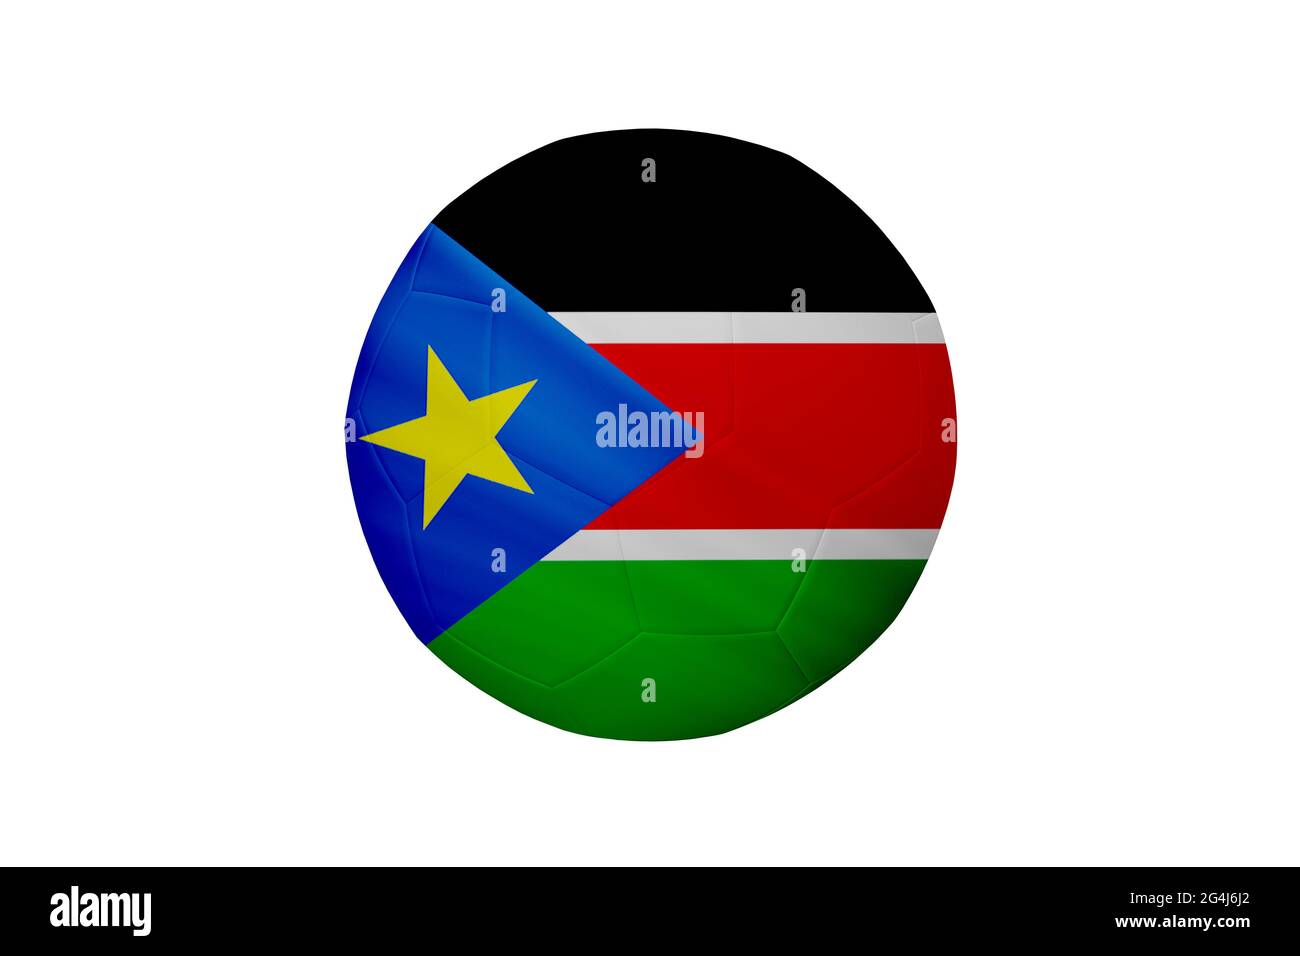 Fußball in den Farben der Südsudan-Flagge isoliert auf weißem Hintergrund. In einem konzeptionellen Meisterschaftsbild, das den Südsudan unterstützt. Stockfoto